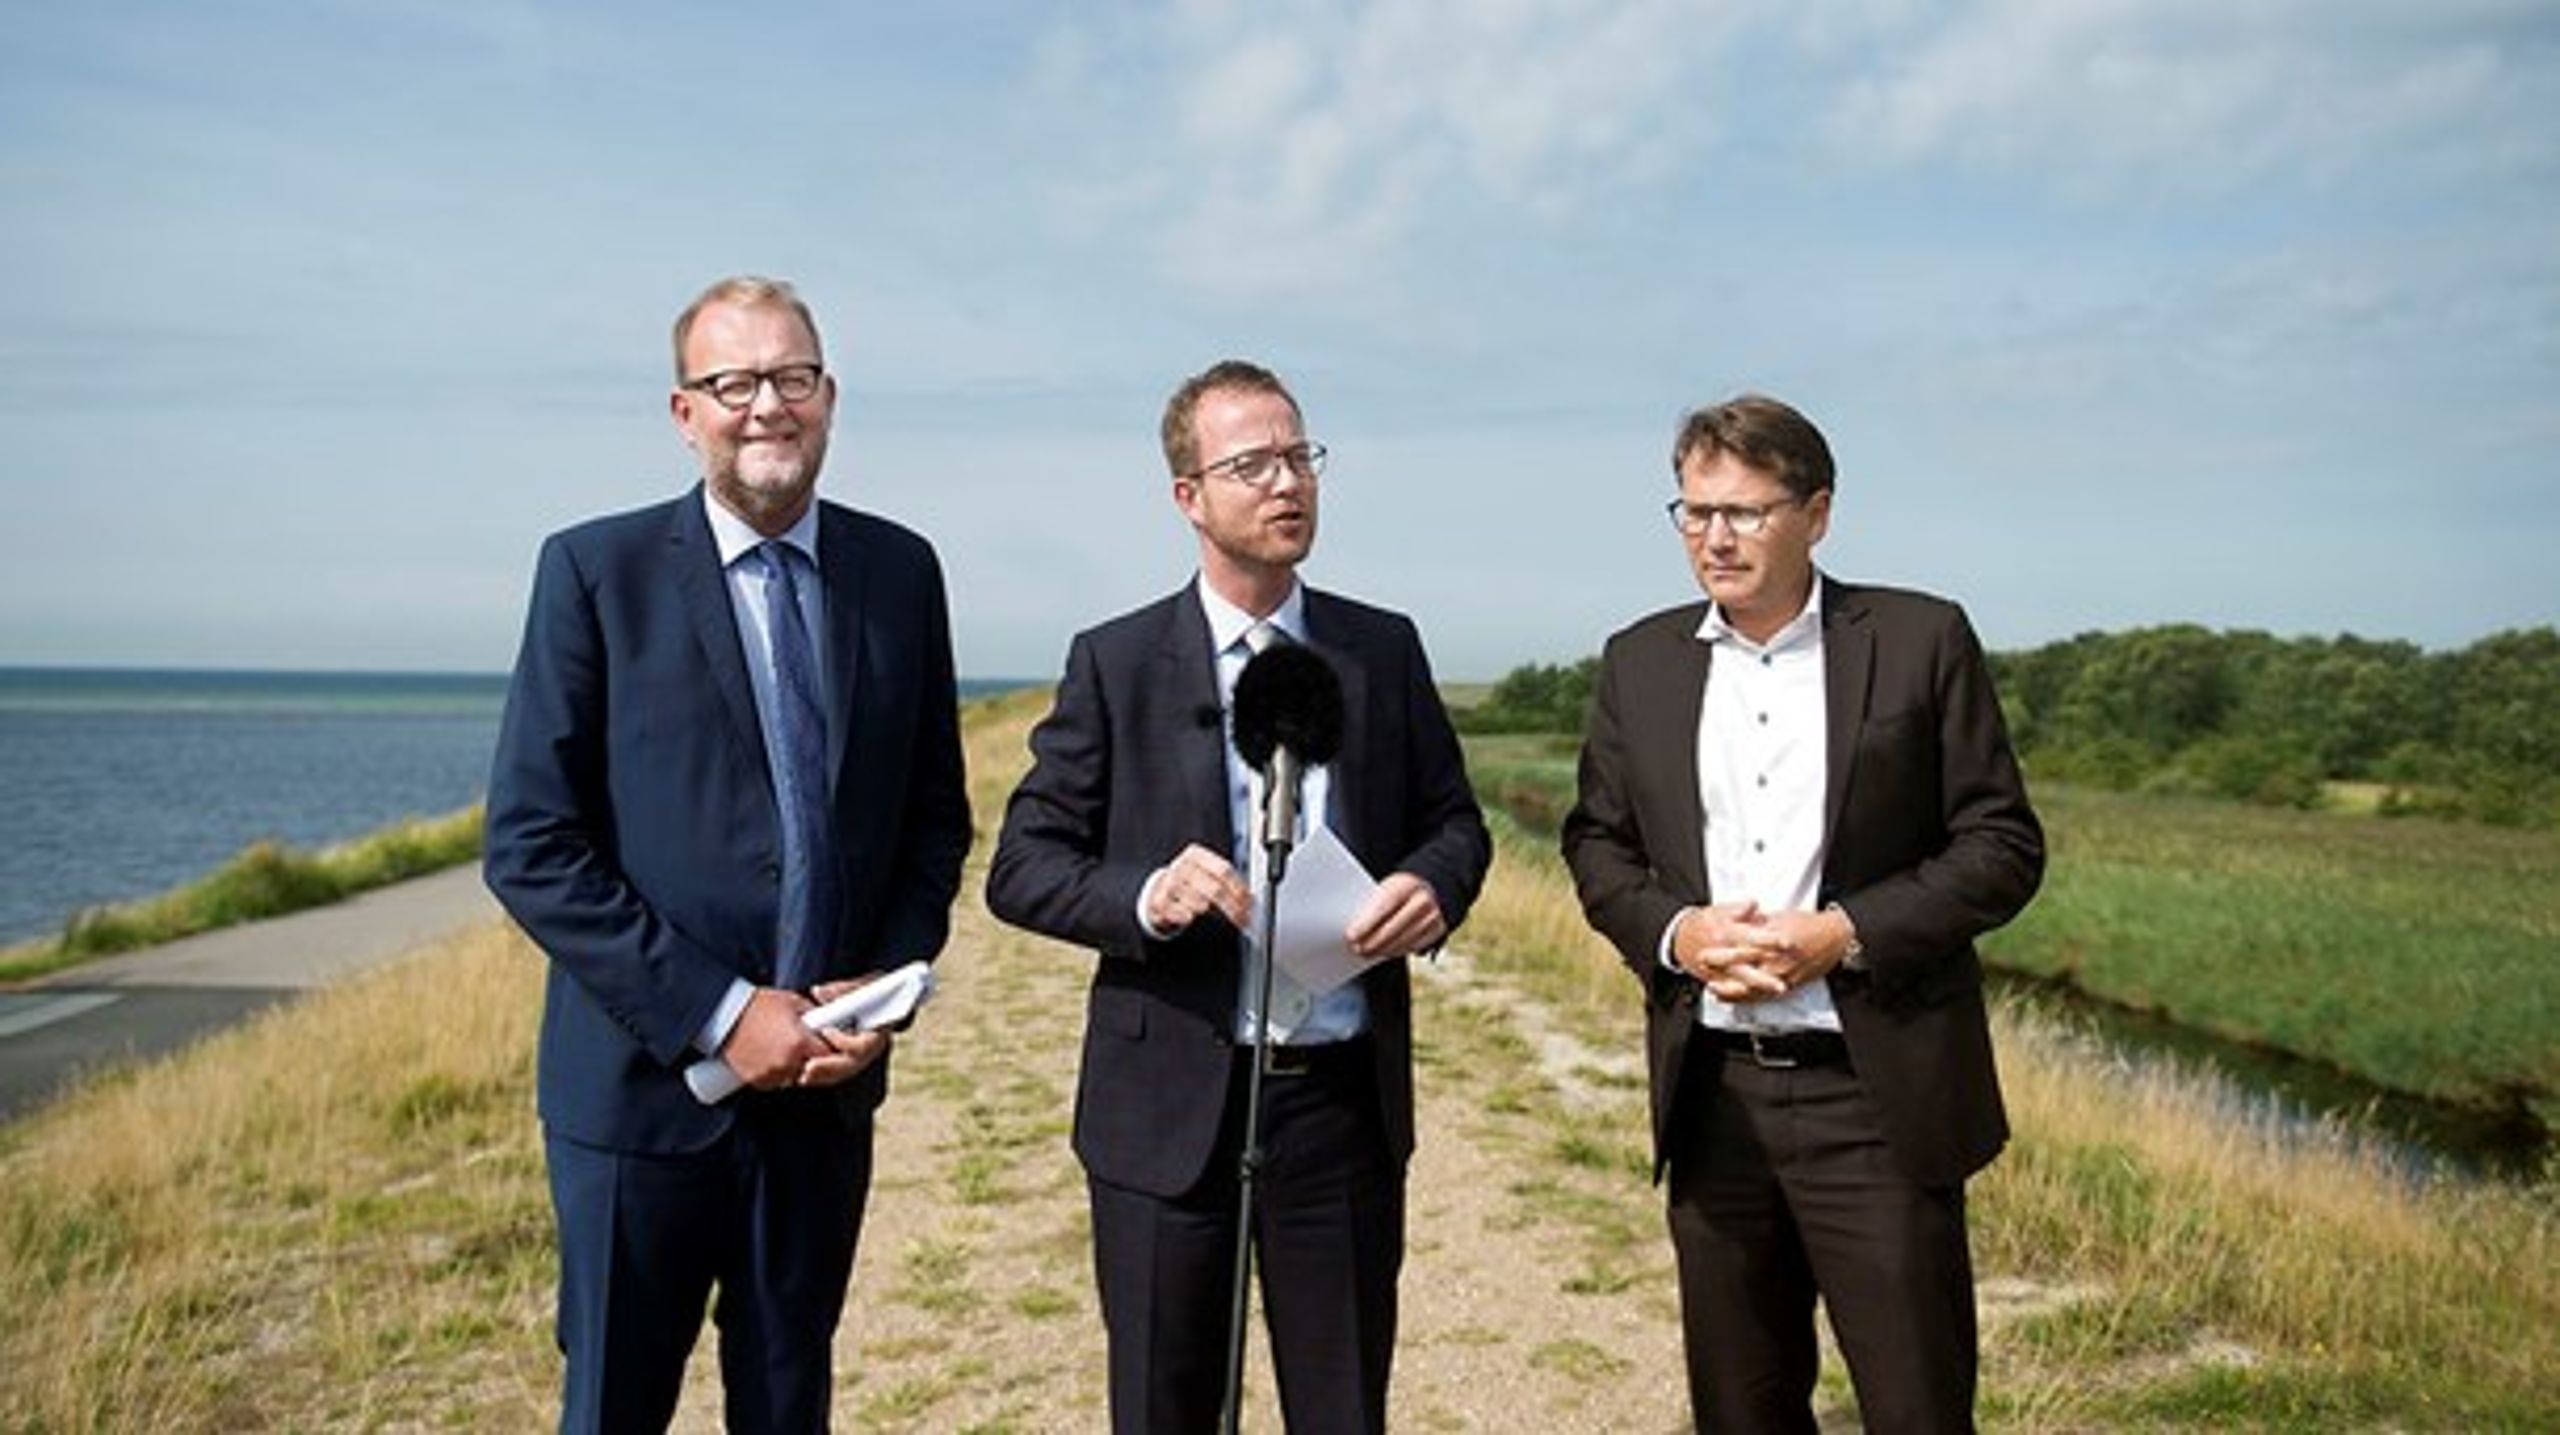 Både energi-, forsynings- og klimaminister Lars Chr. Lilleholt (V), miljø- og fødevareminister Esben Lunde Larsen (V) og erhvervsminister Brian Mikkelsen (K) er i aktion i denne uges grønne overblik.